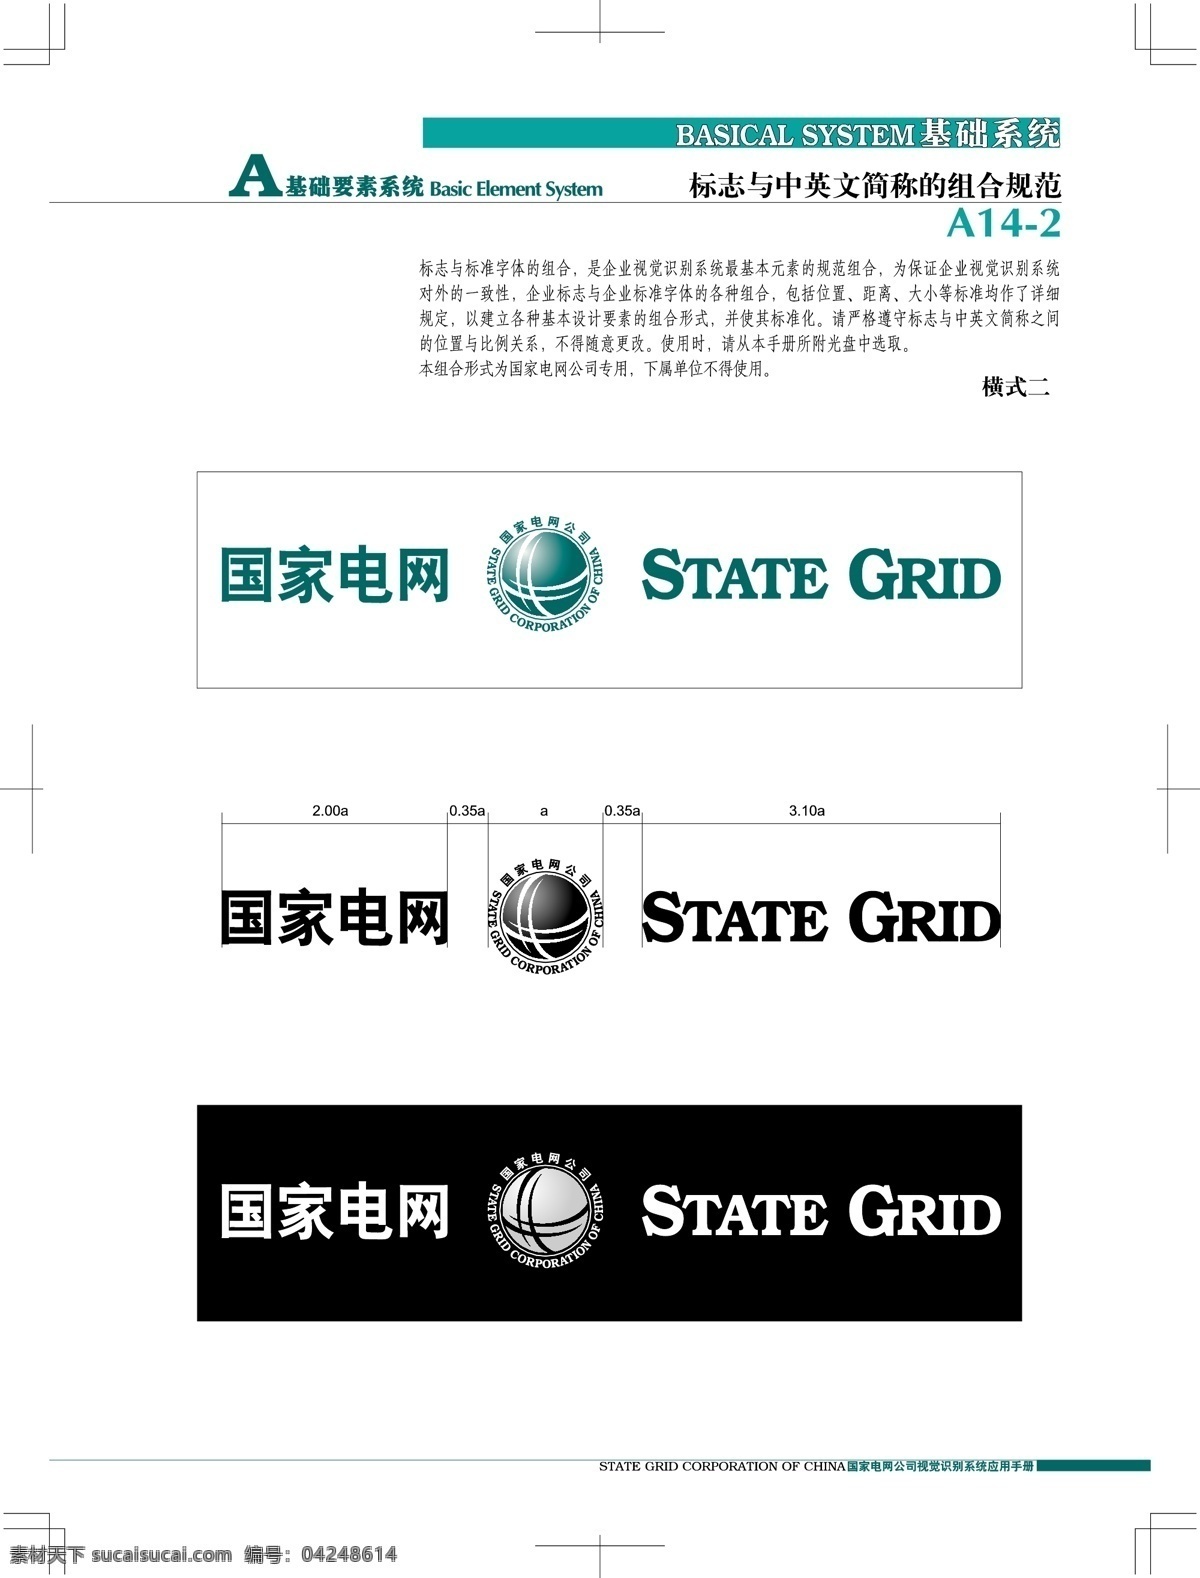 中国 国电 vi 矢量 格式 仅 供 大家 学习 参考 之用 标识标志图标 企业 logo 标志 矢量图 矢量图库